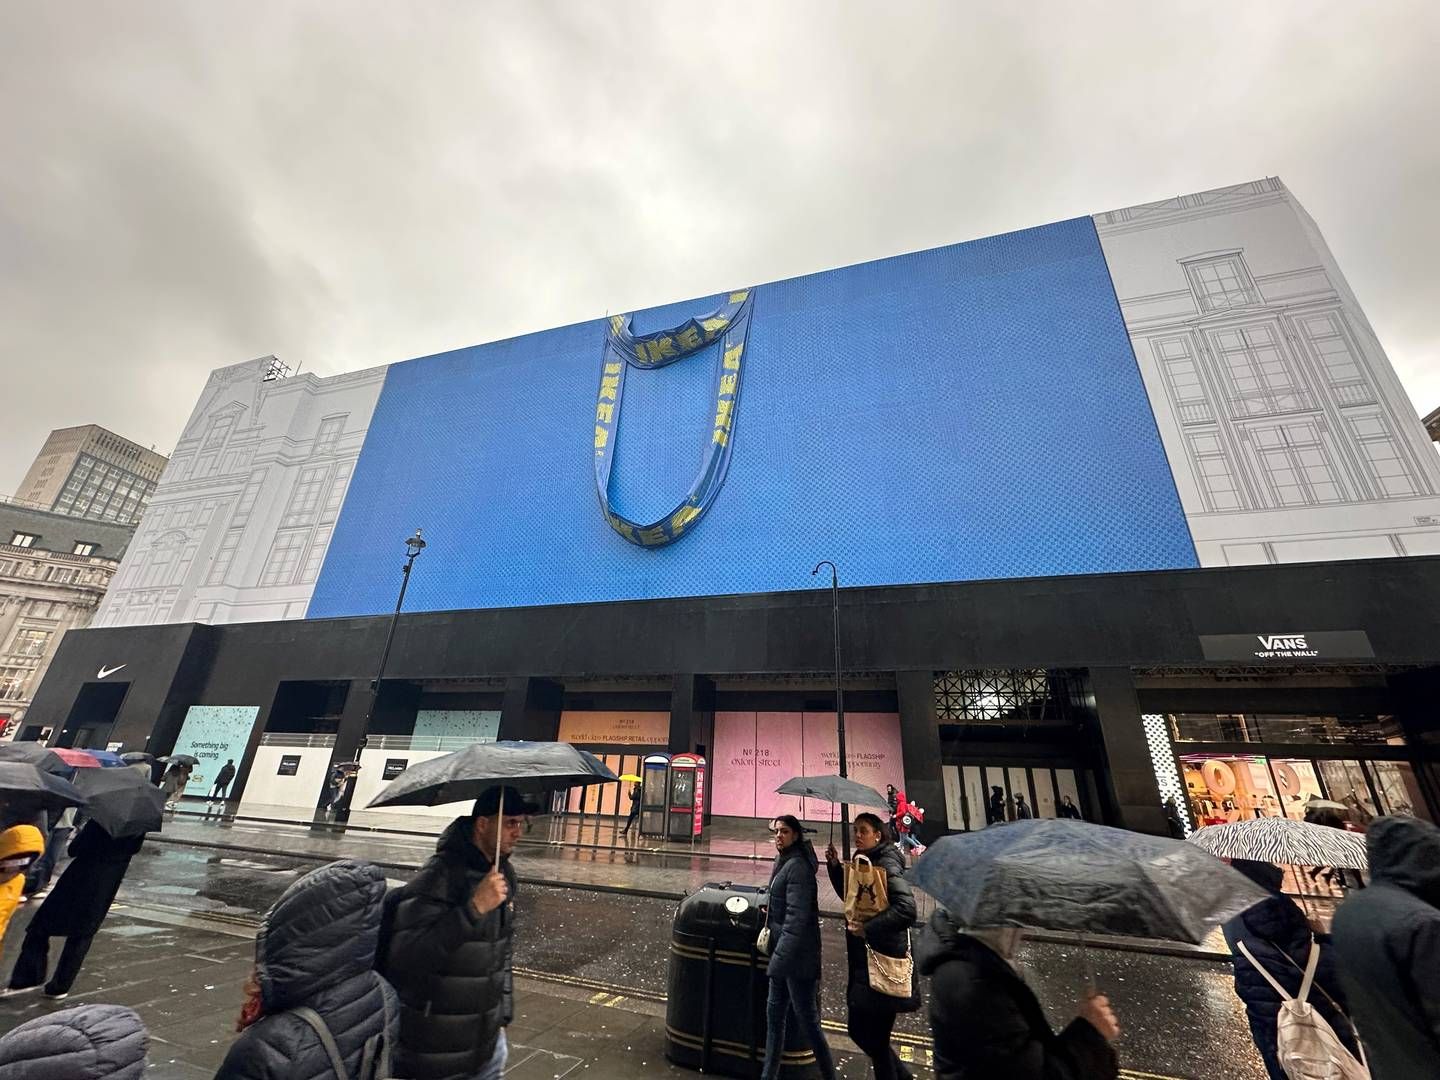 KOMMER SNART: Møbelkjeden Ikea åpner ny butikk i hjertet av London, og driver allerede med en svært synlig markedsføring av det nye byvarehuset. | Foto: Gøril Huse / HandelsWatch